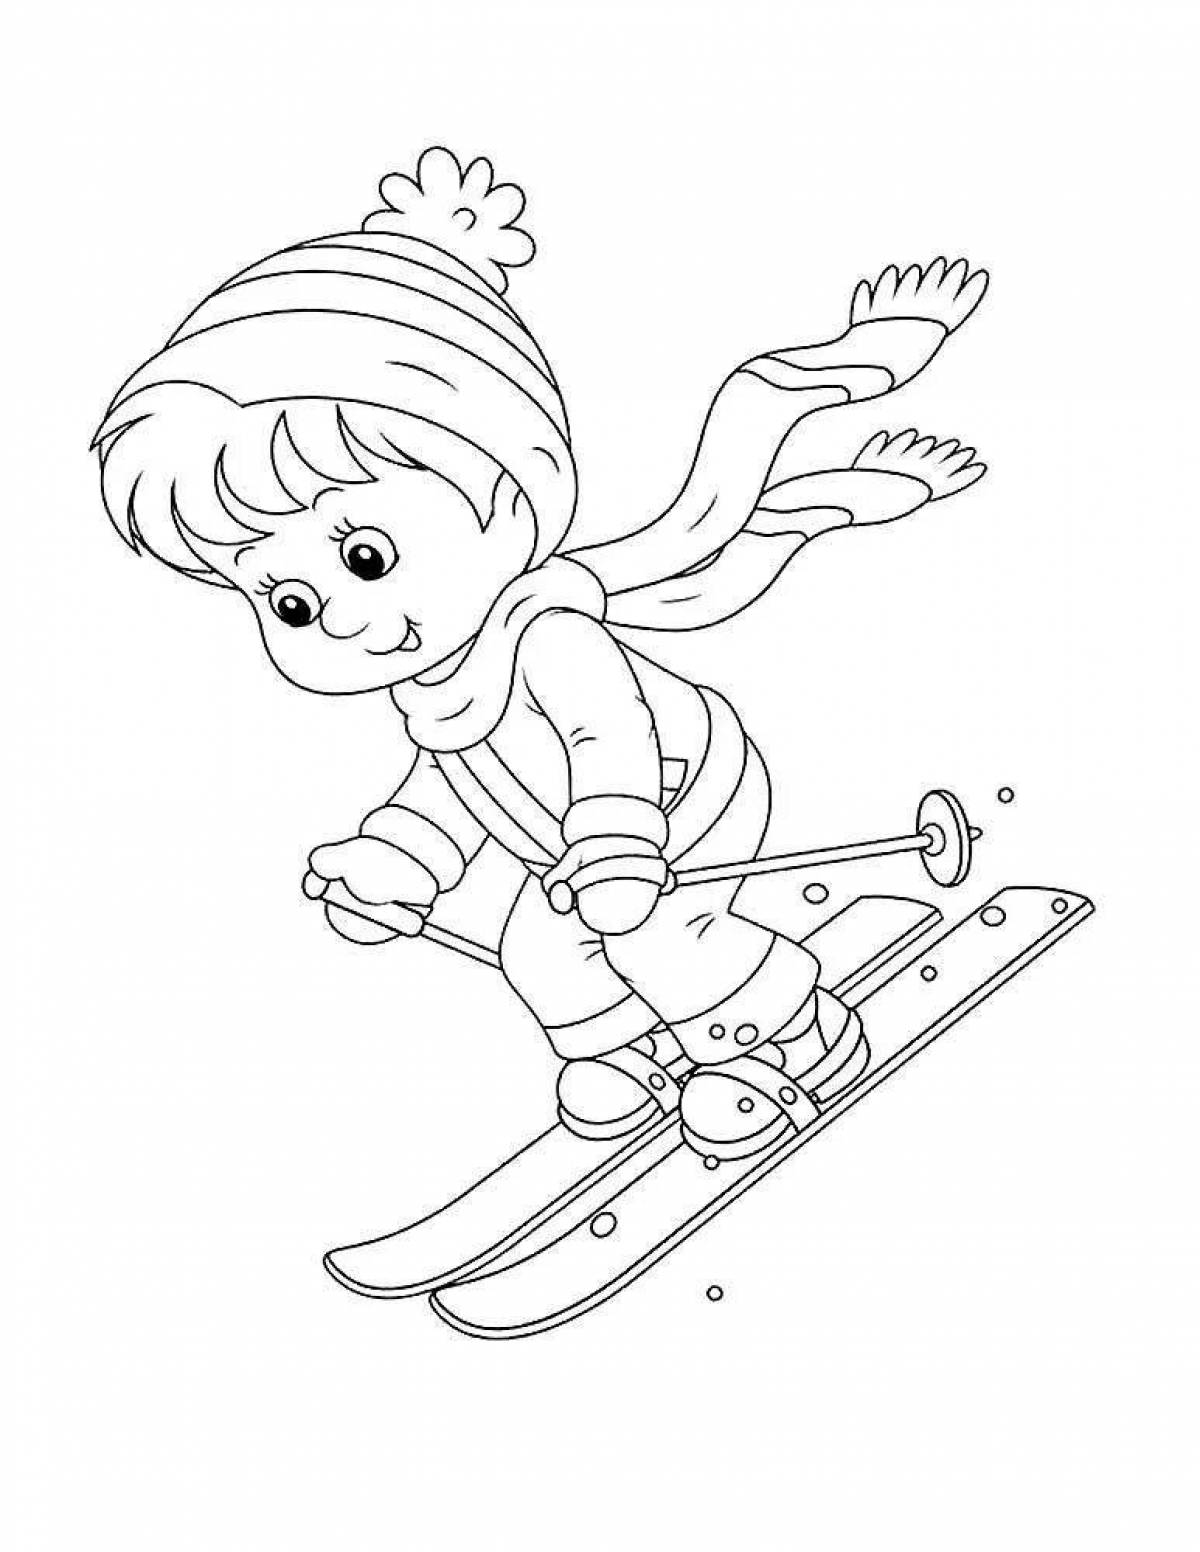 Увлекательная детская раскраска на лыжах